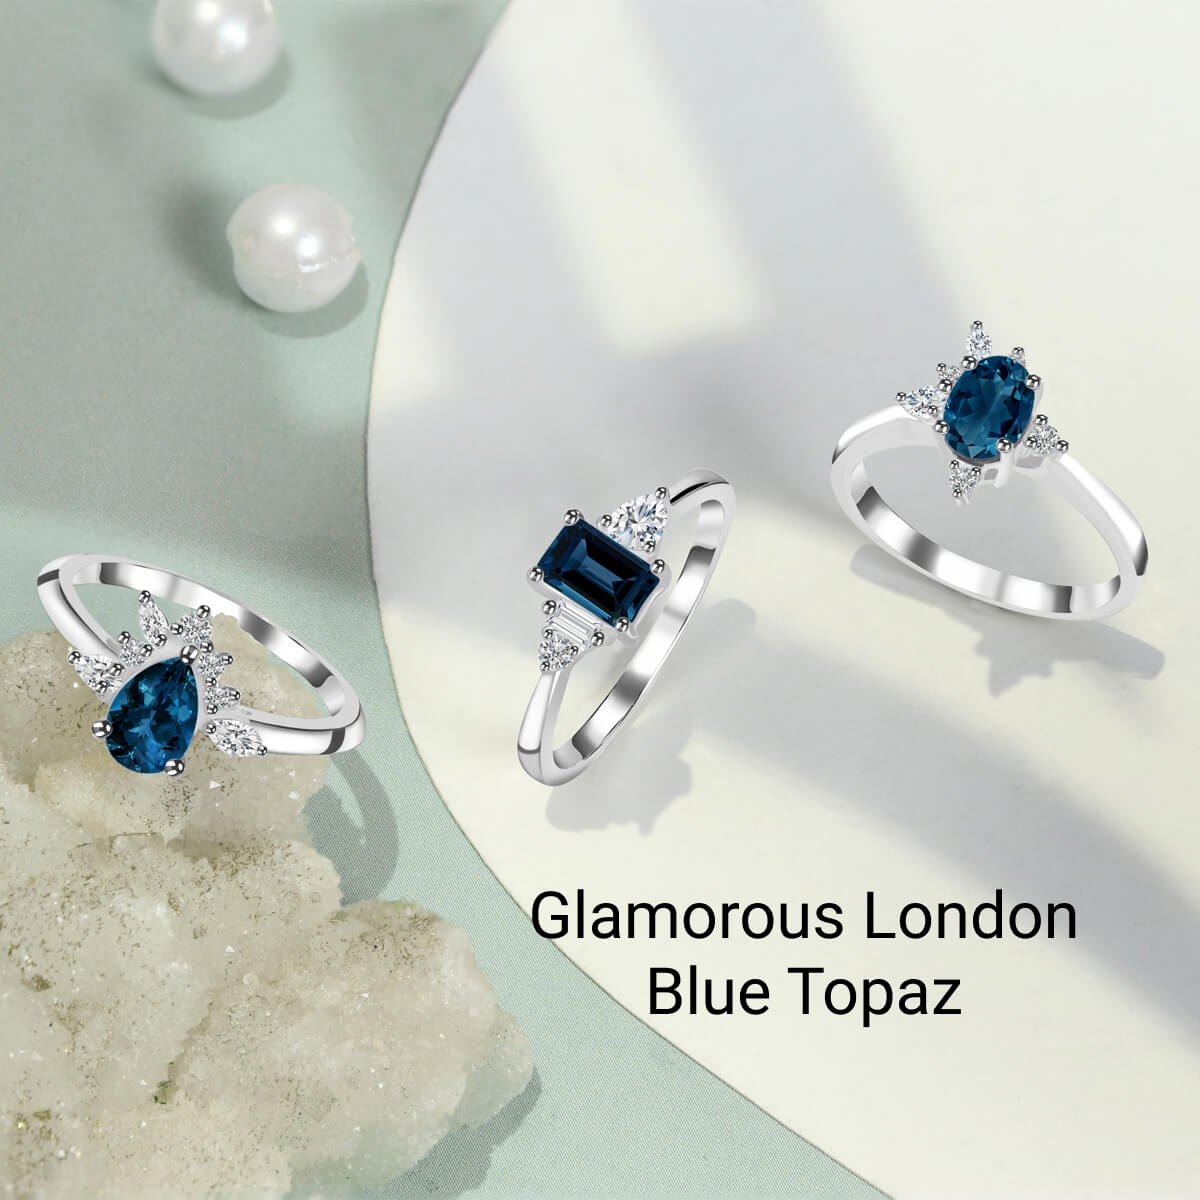 London Blue Topaz Jewelry